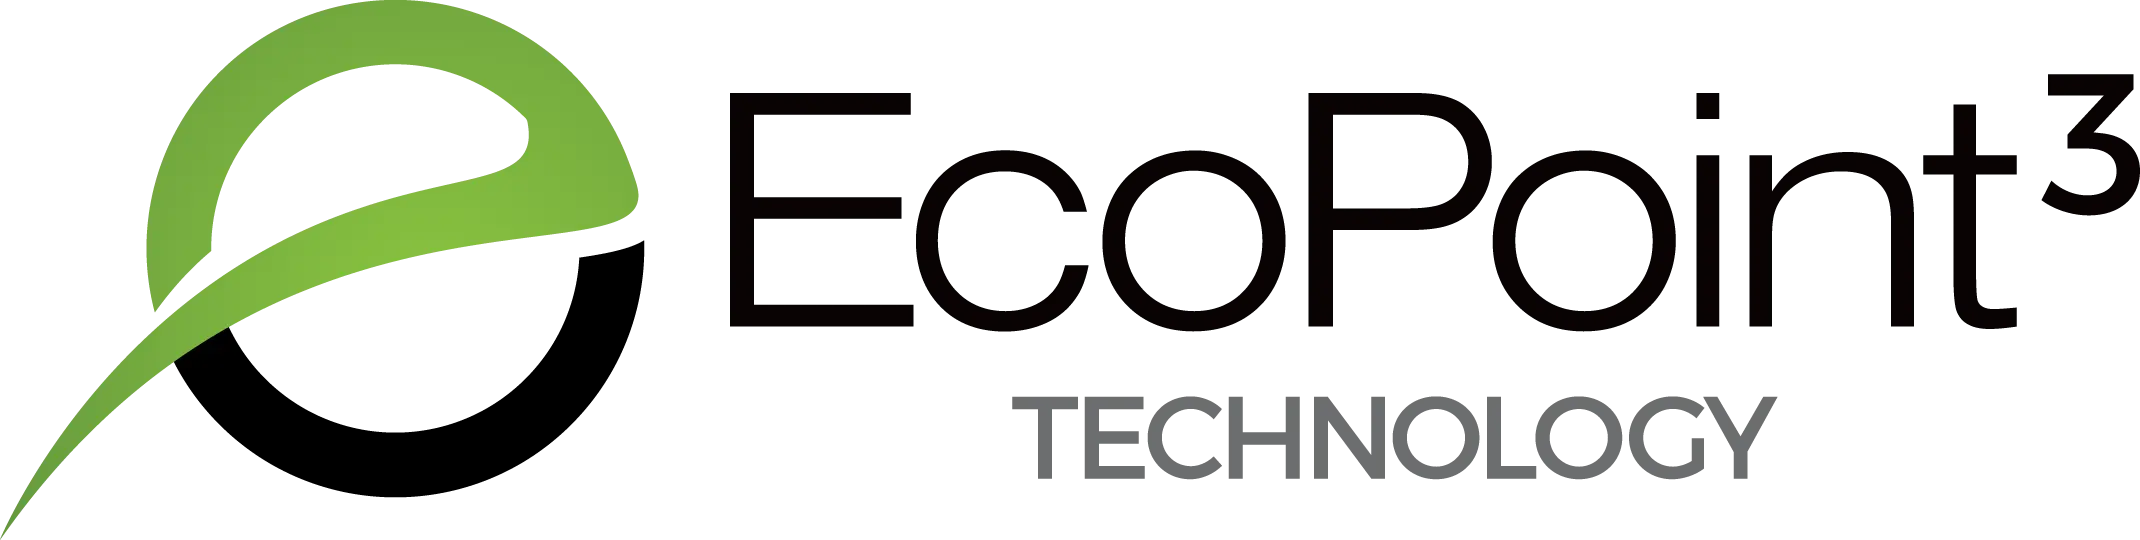 Ecopoint3 logo